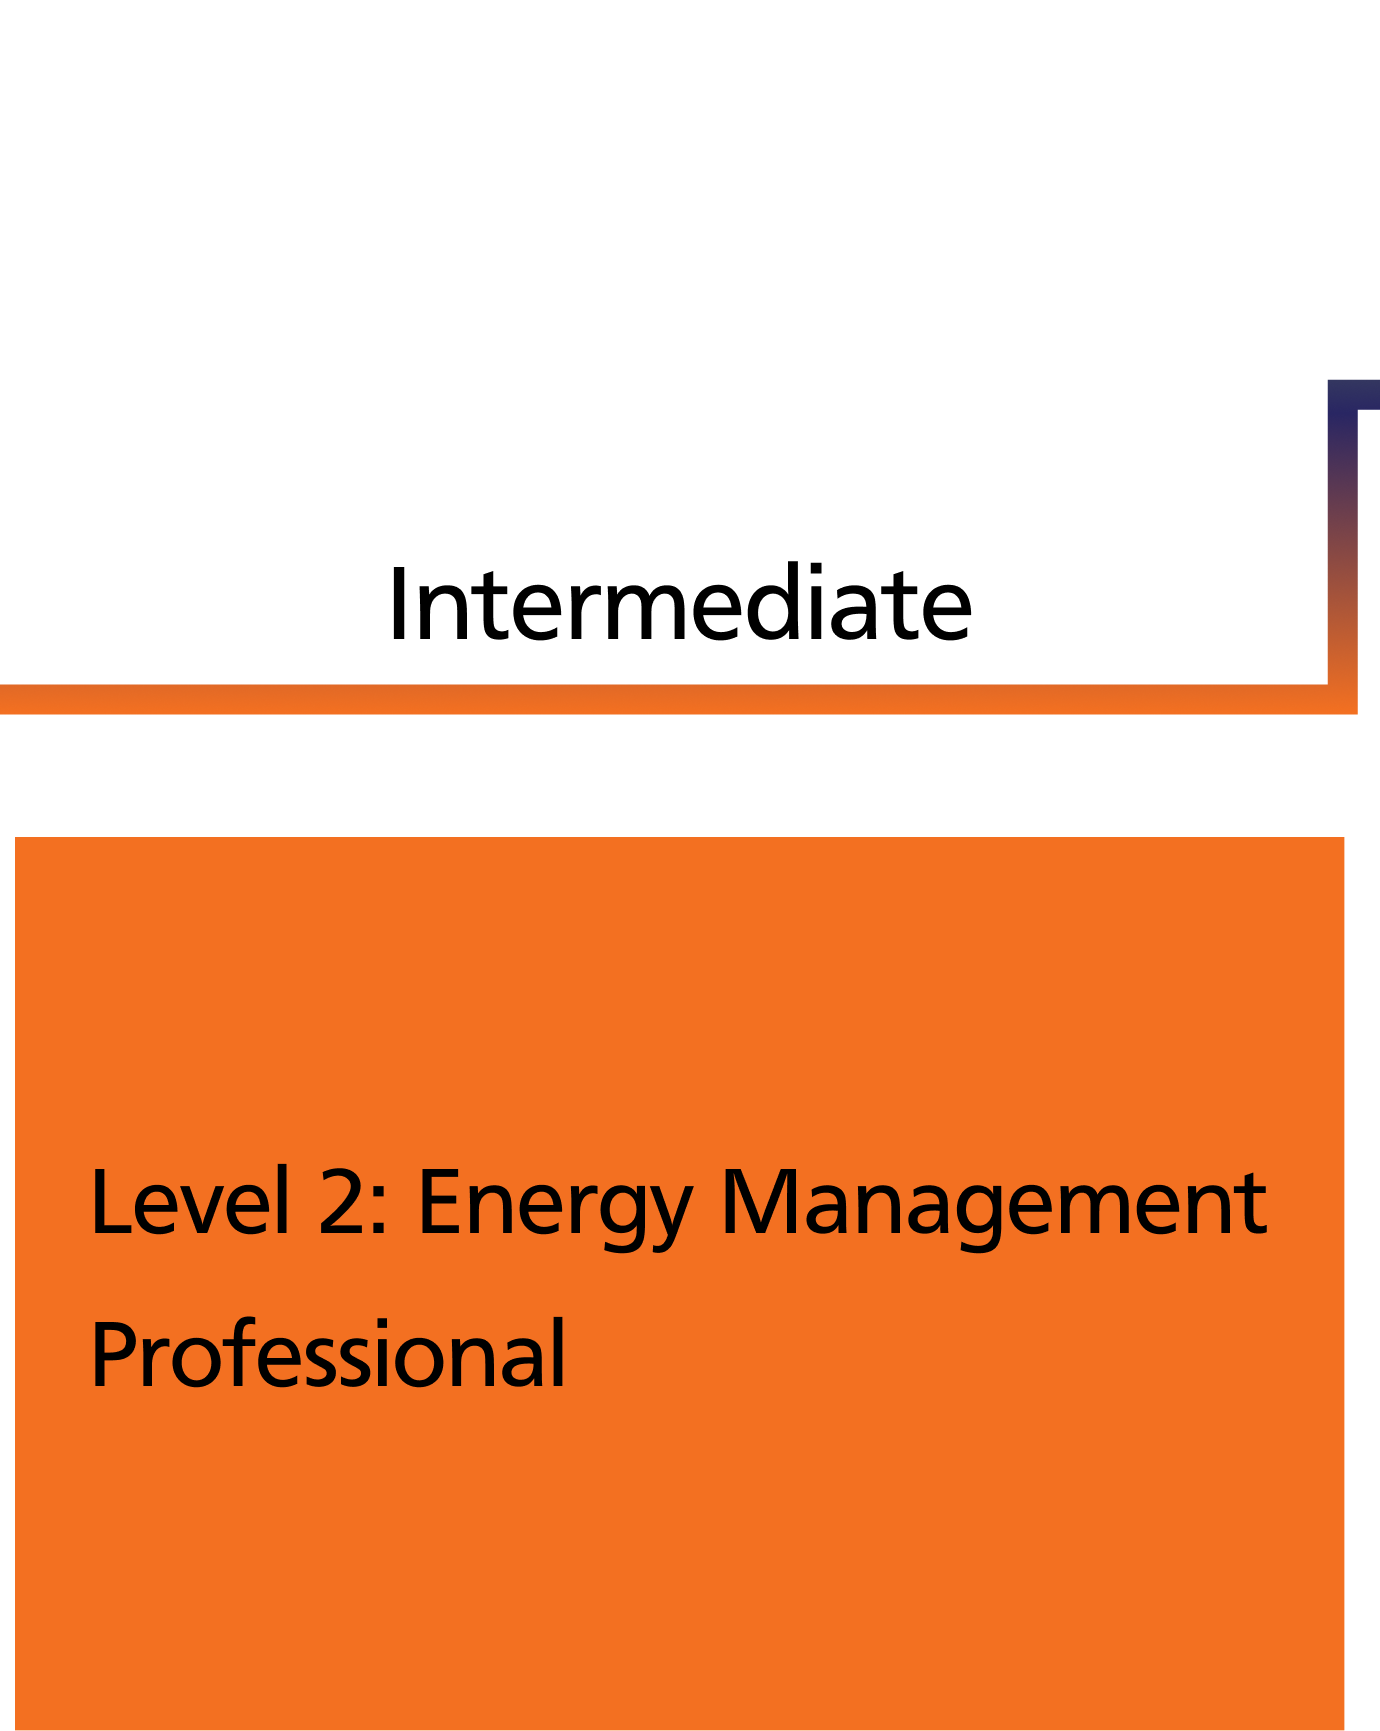 Level 2: Energy Management Professional